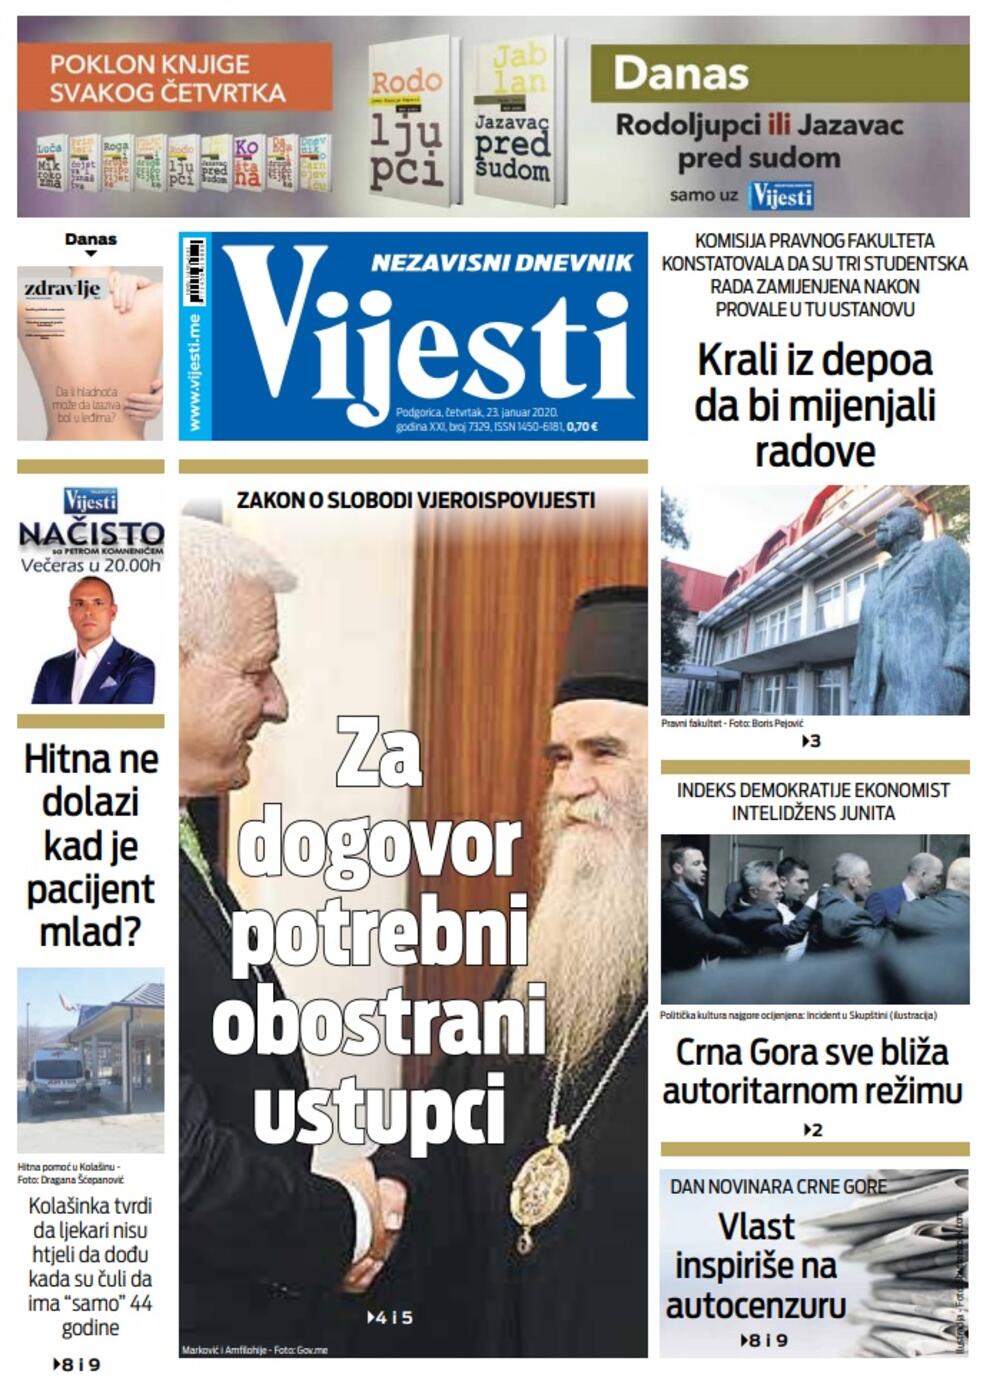 Naslovna strana "Vijesti" za 23. januar 2020. godine, Foto: "Vijesti"